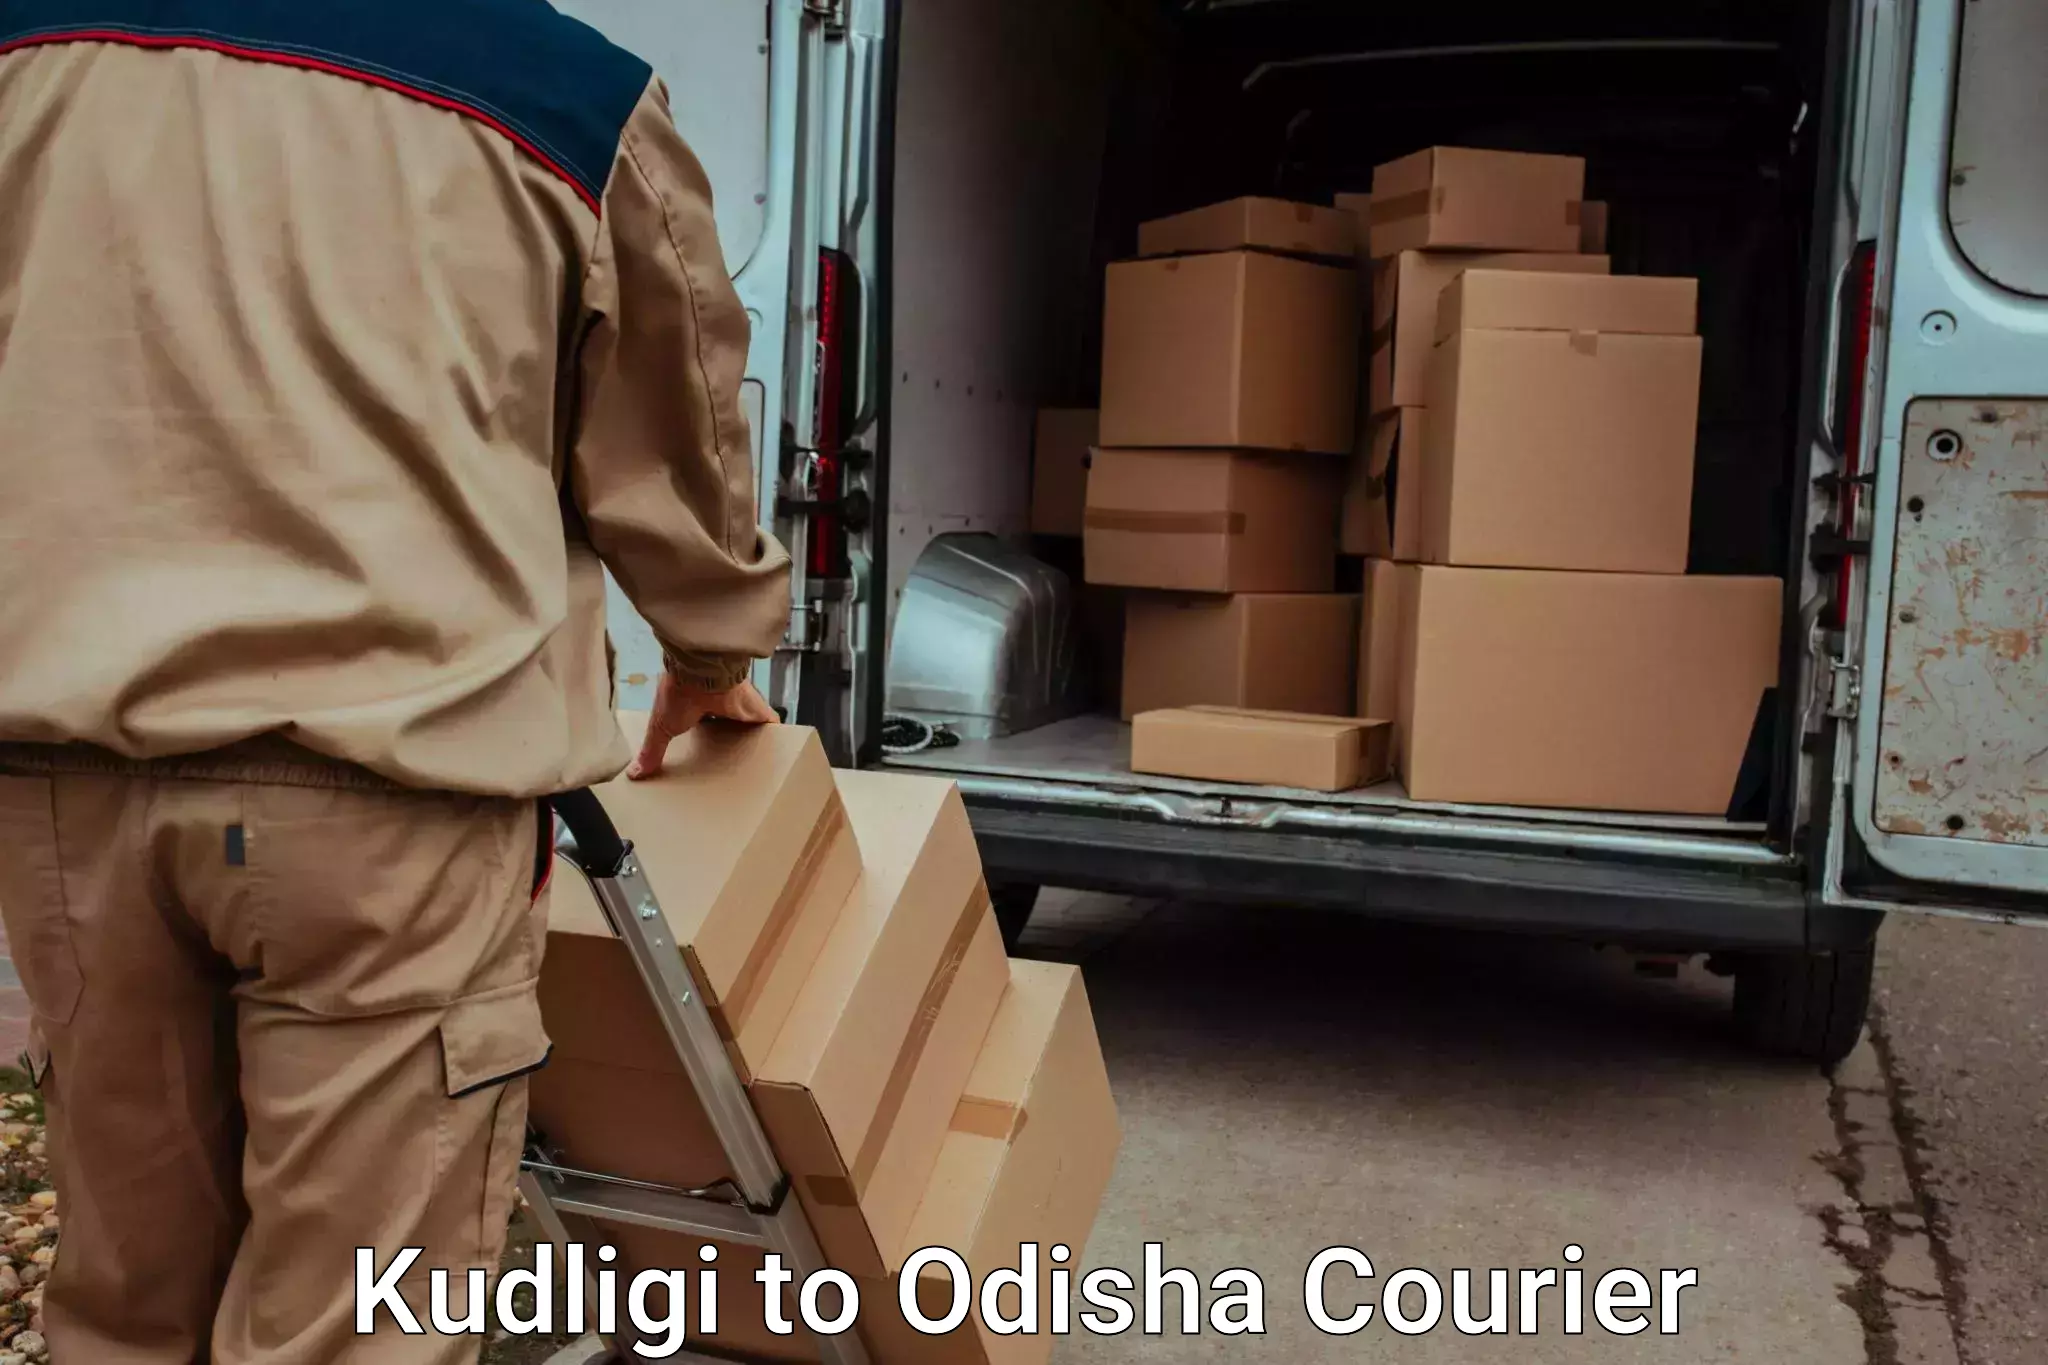 Premium luggage courier Kudligi to Odisha